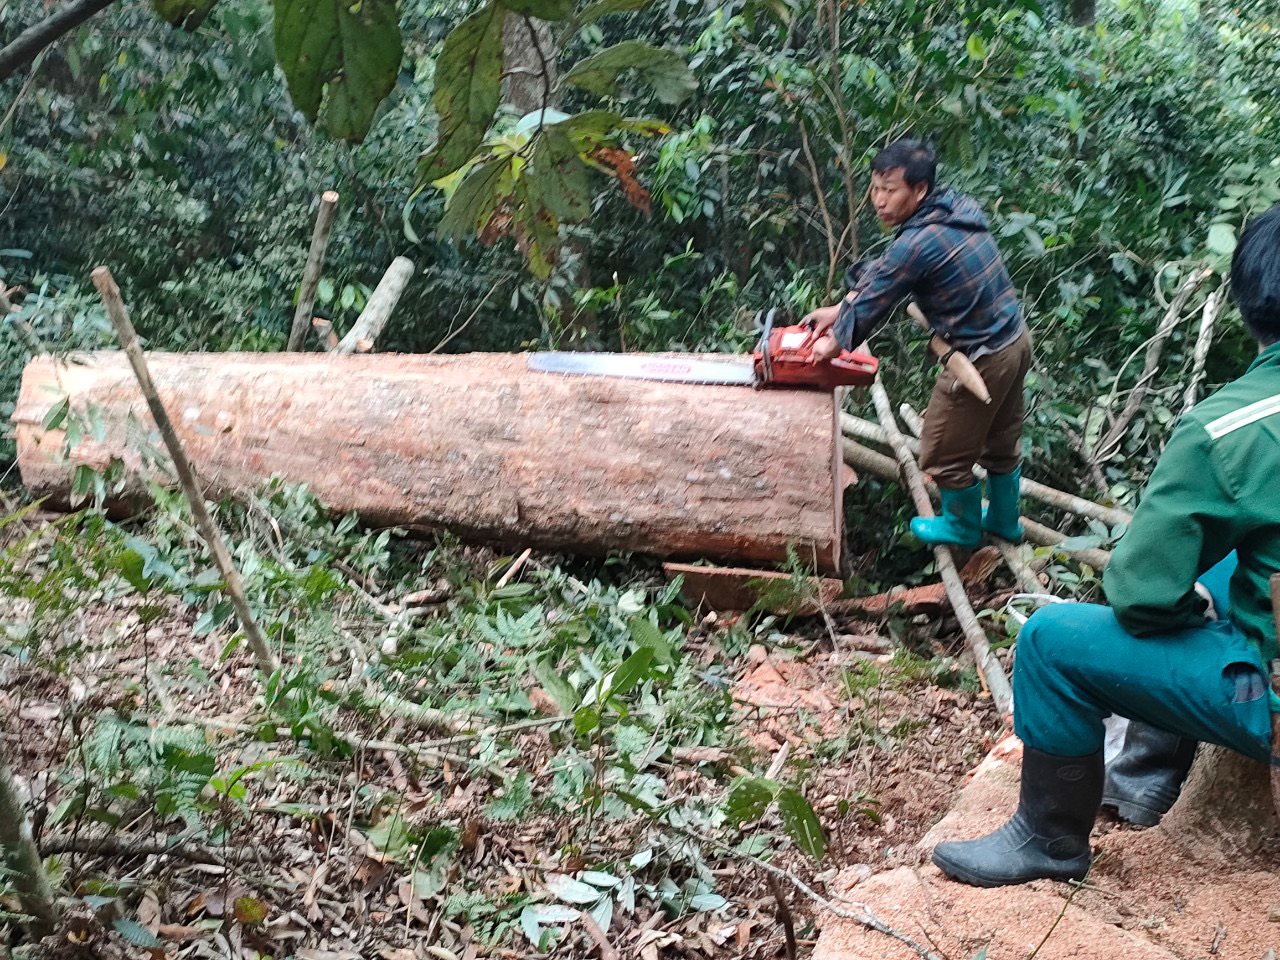 Bắt quả tang 5 đối tượng khai thác gỗ trái phép ở Thanh Hoá